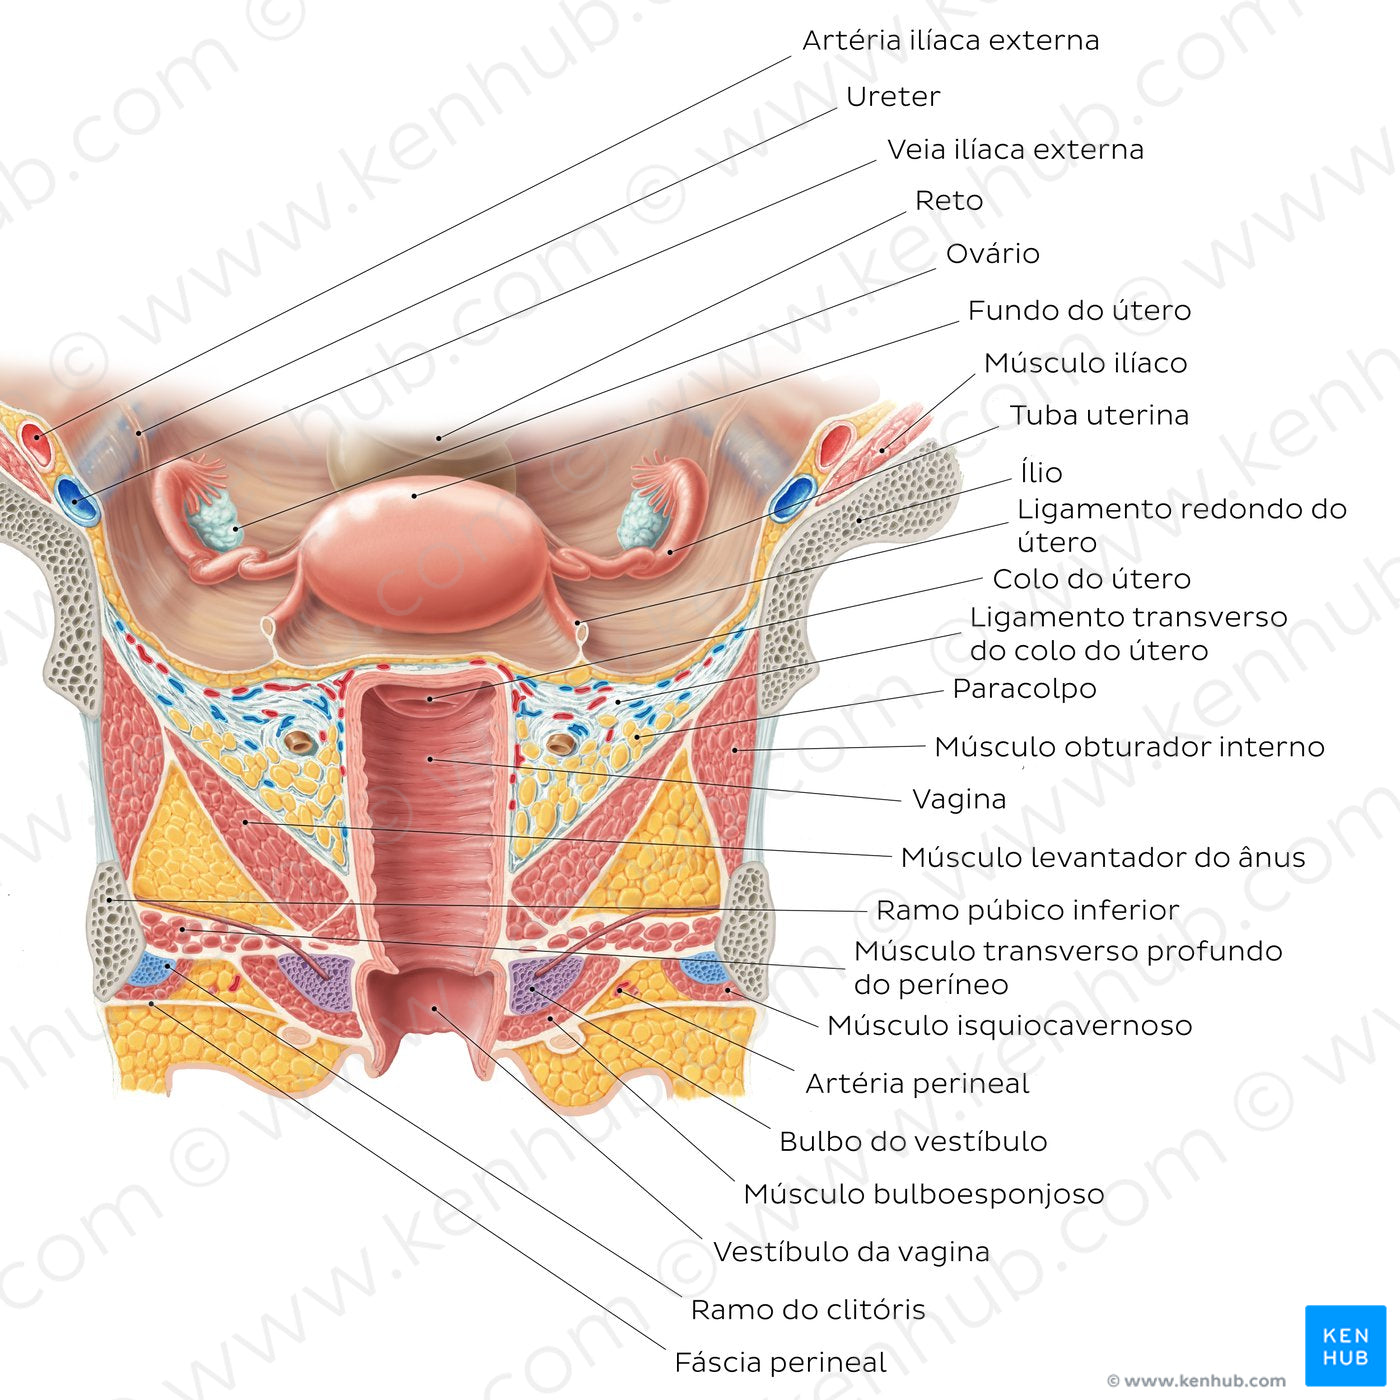 Uterus and vagina (Portuguese)